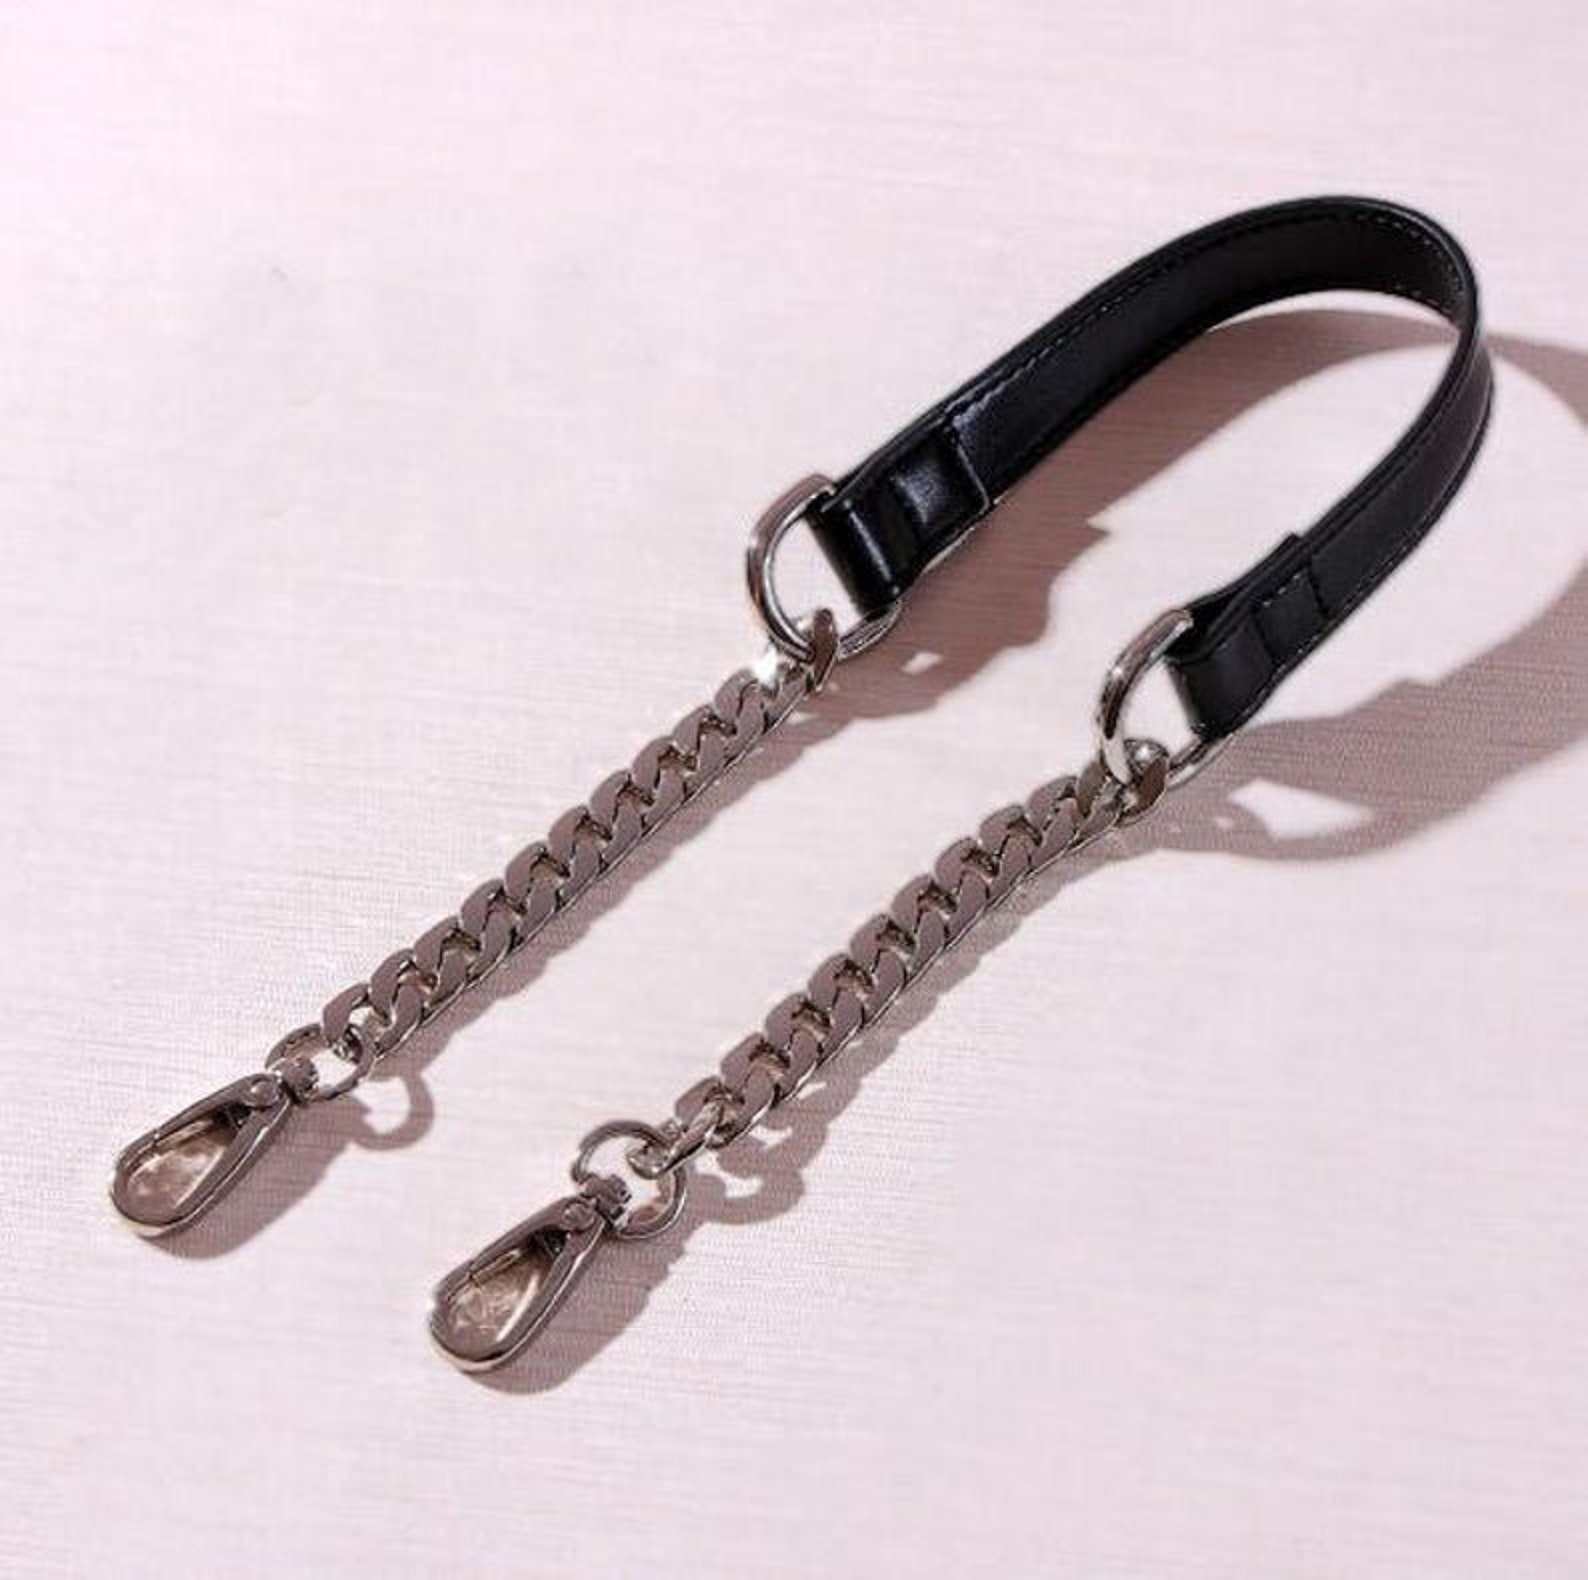 12mm Black Leather Purse Chain Strap Metal Shoulder Handbag - Etsy UK